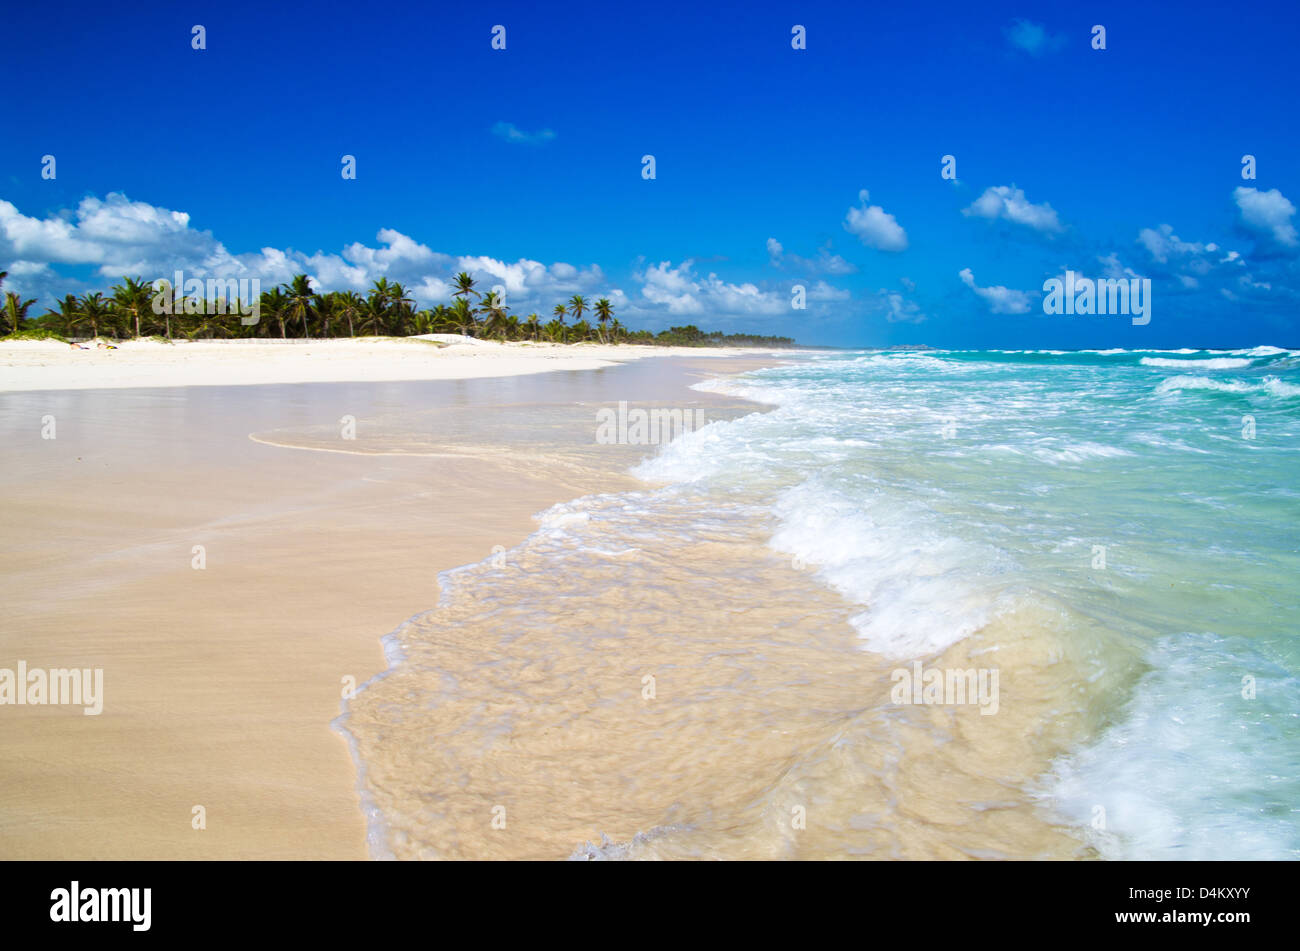 beautiful blue caribbean sea beach Stock Photo